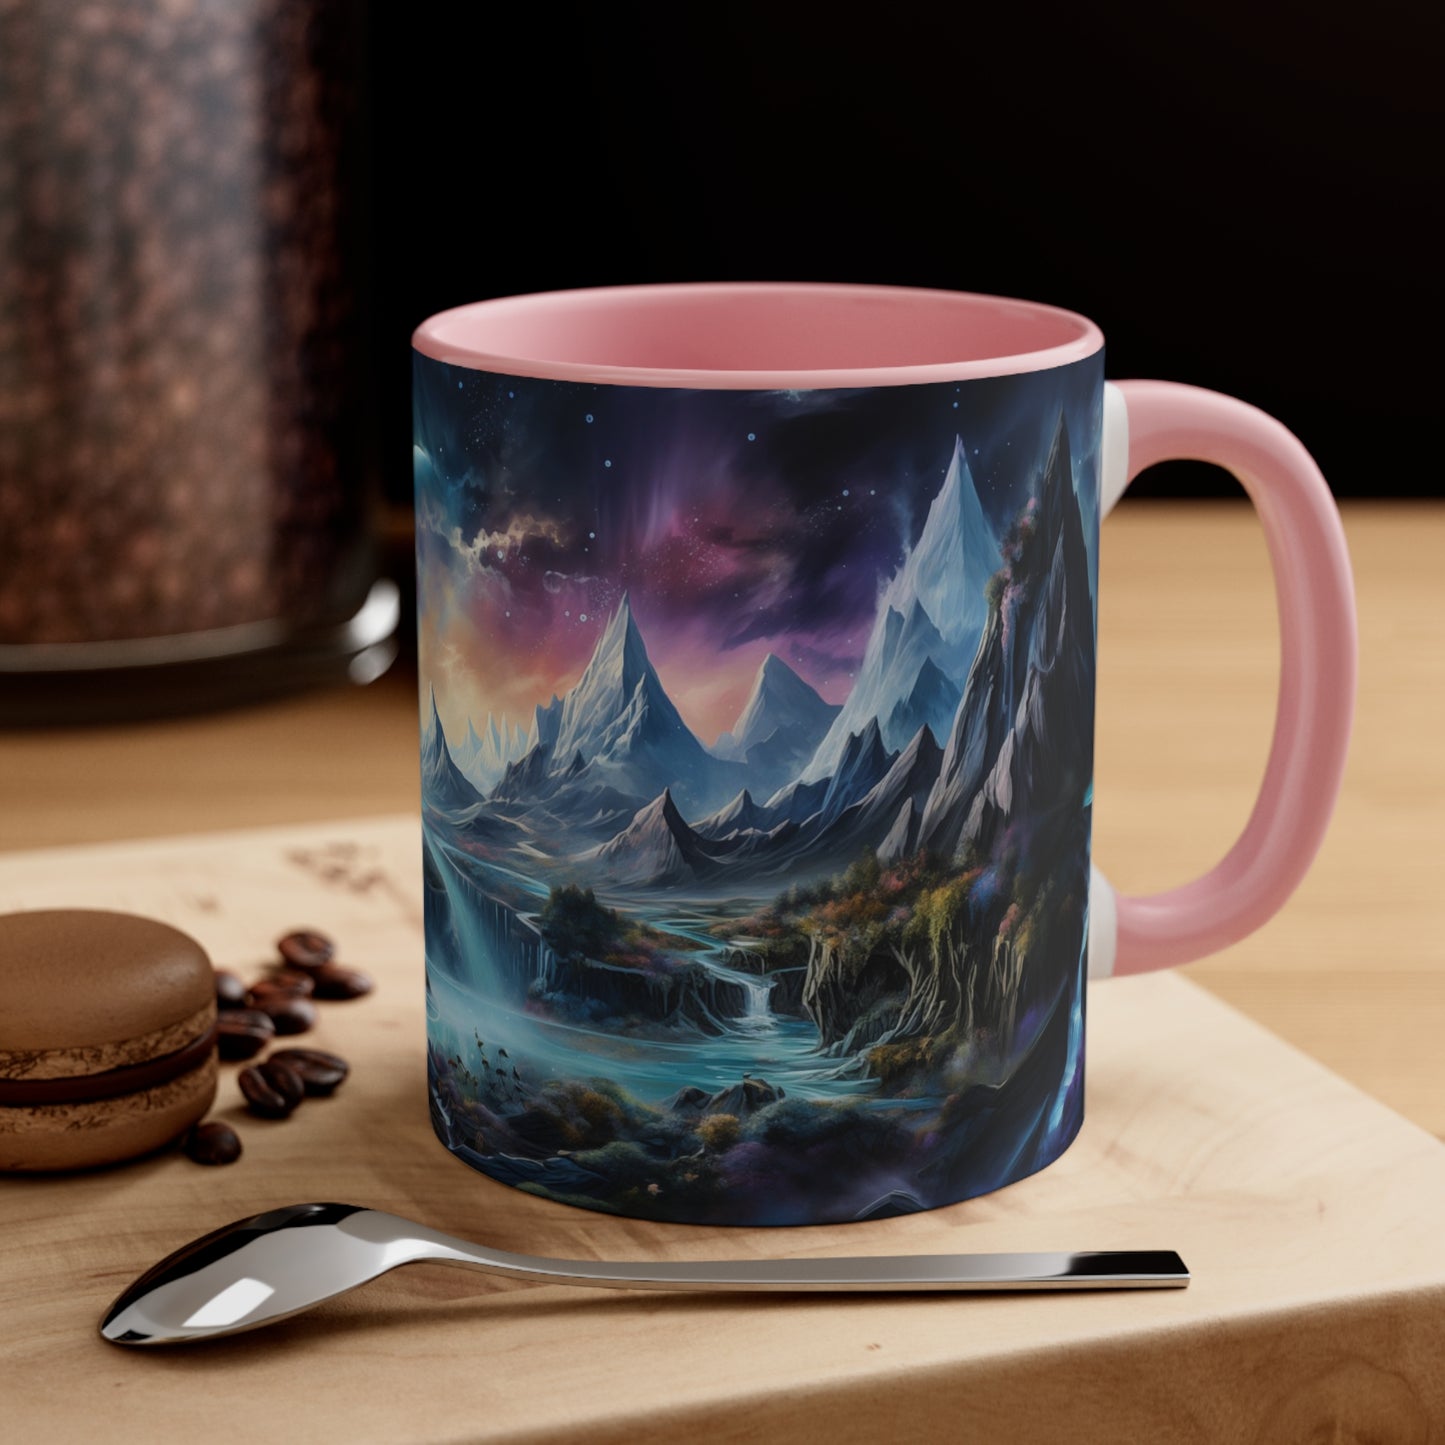 Cosmic Fantasy Landscape Coffee Mug, 11oz